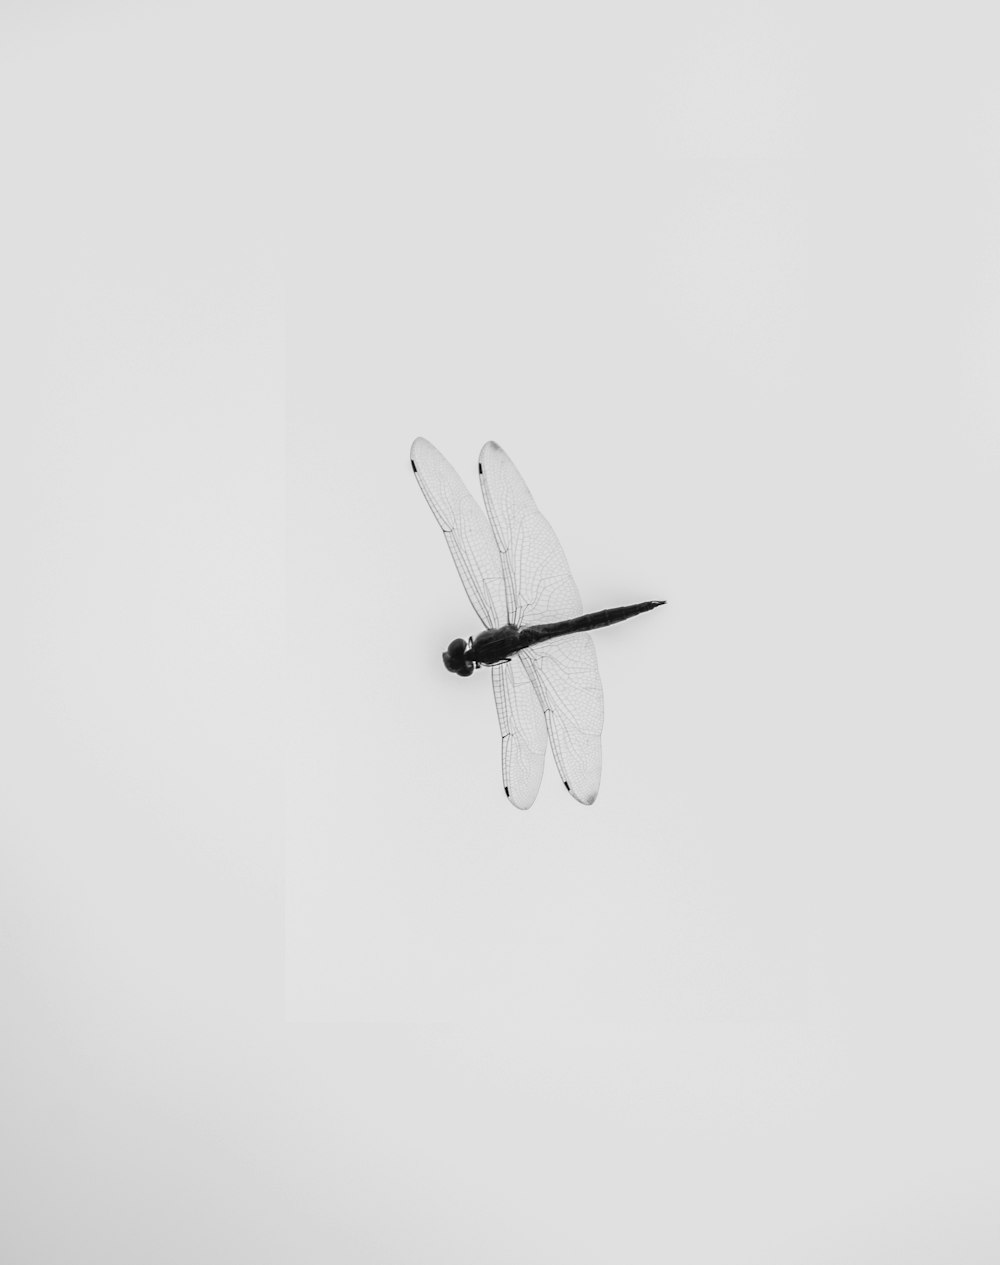 uma foto em preto e branco de uma libélula